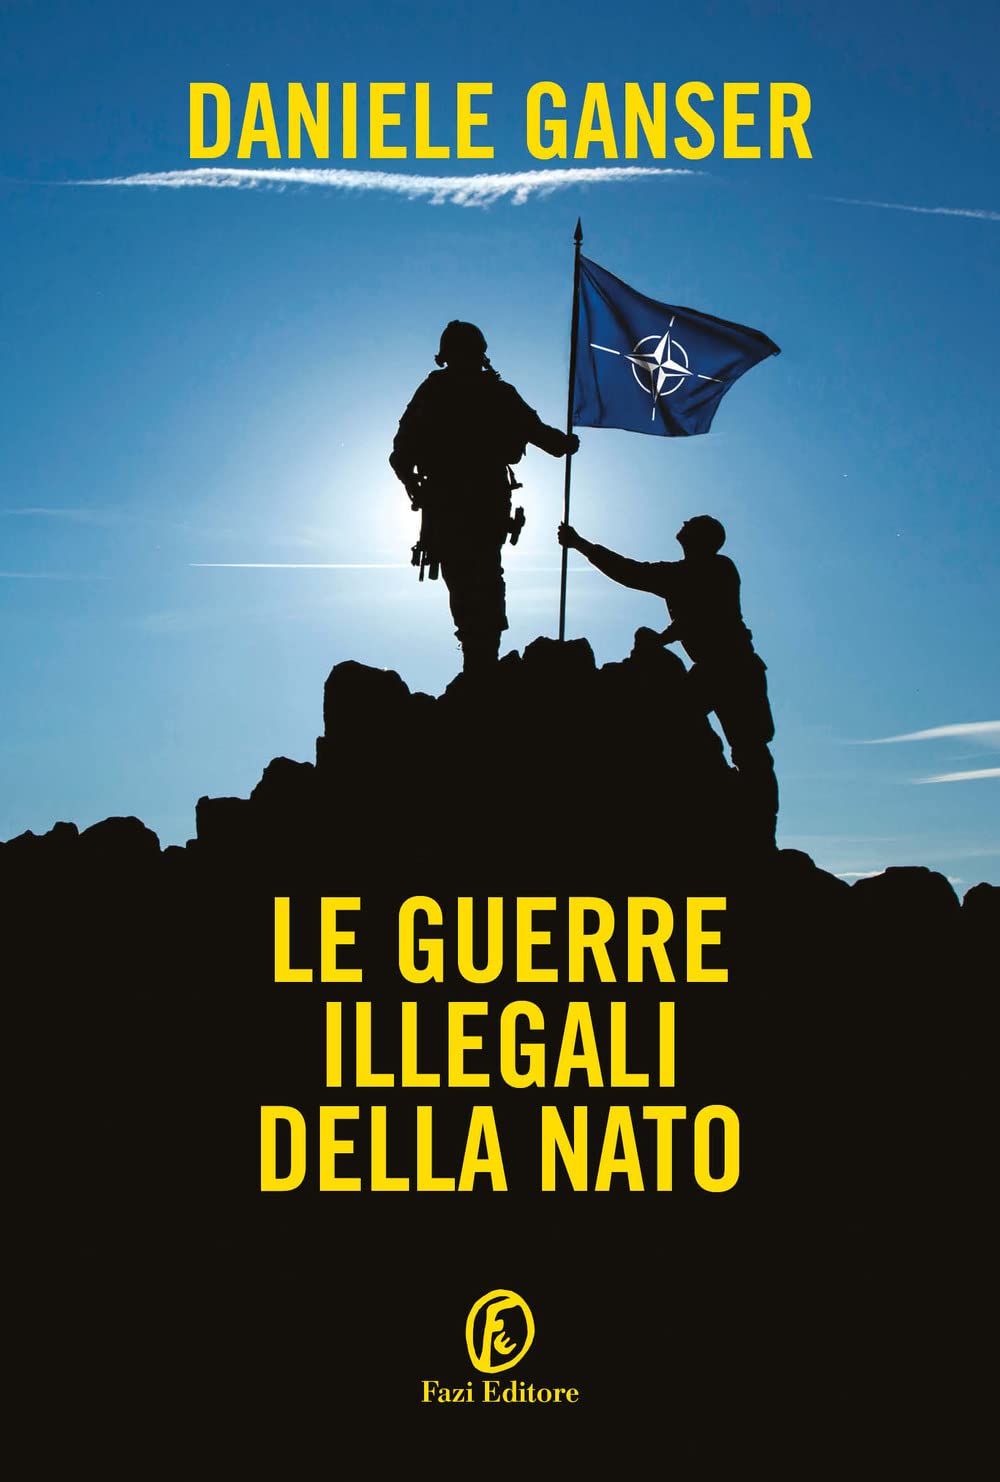 Le Guerre Illegali Della NATO di Daniele Ganser – Recensione